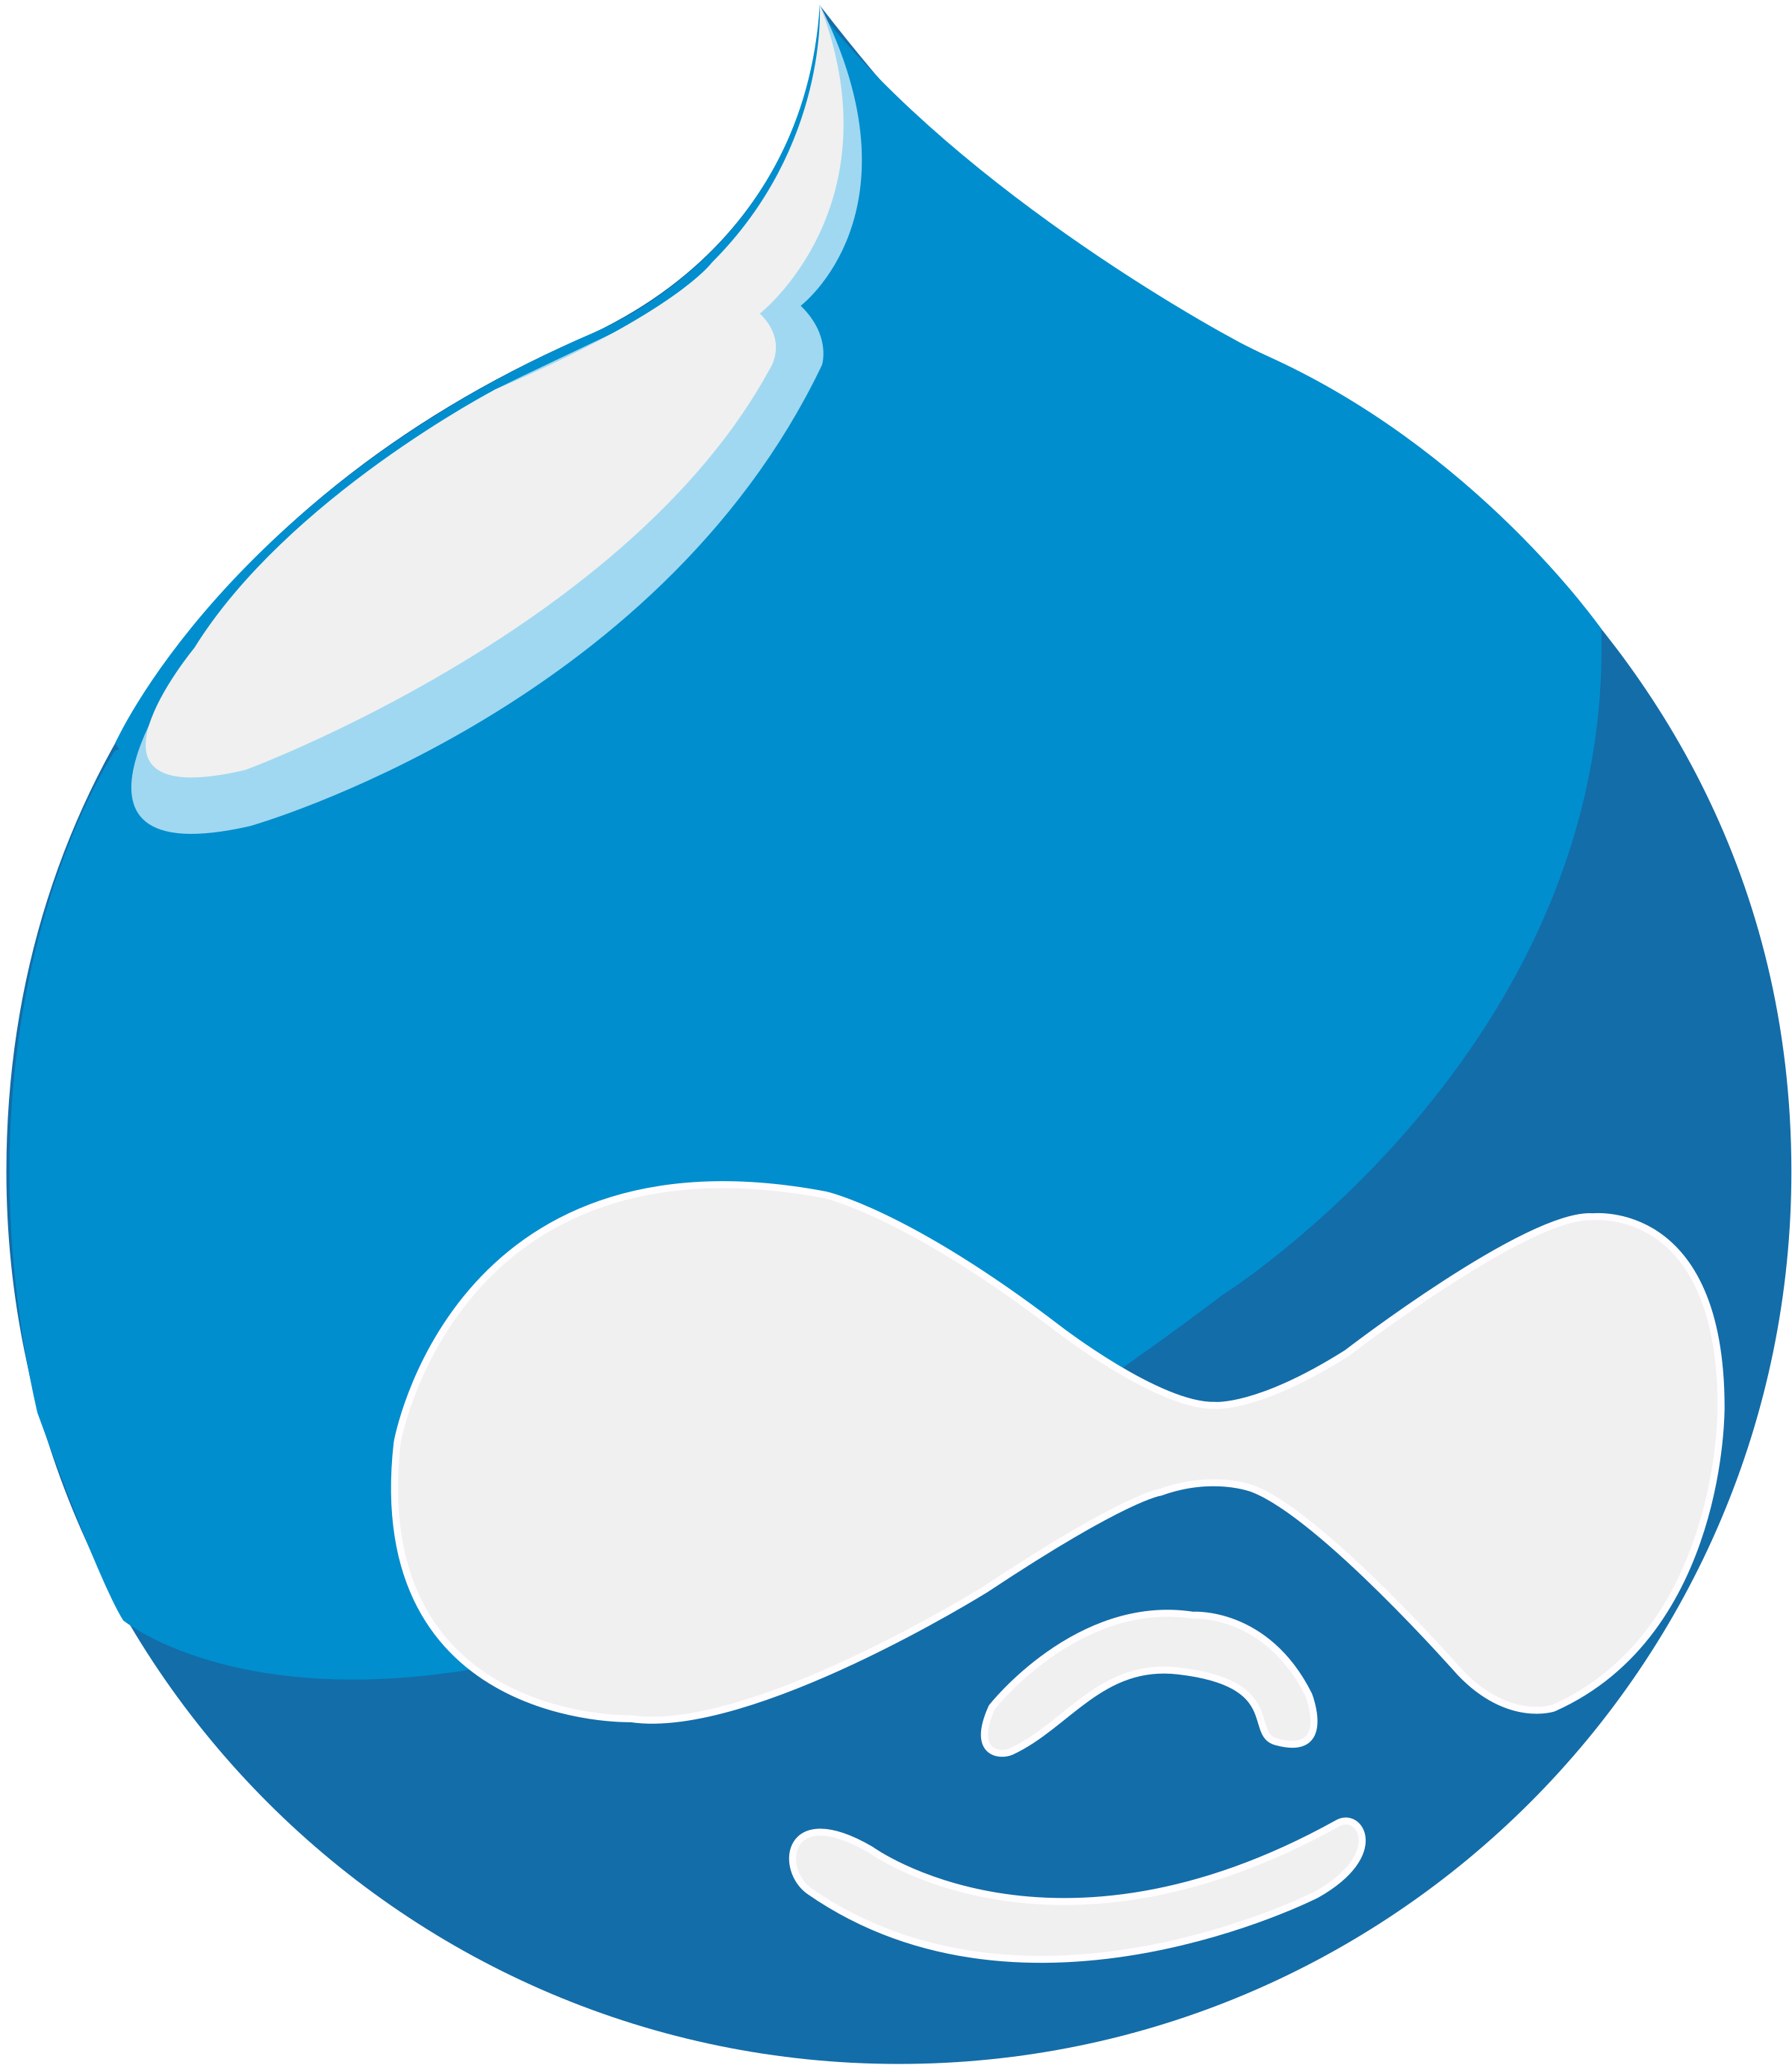 Blue Drupal logo